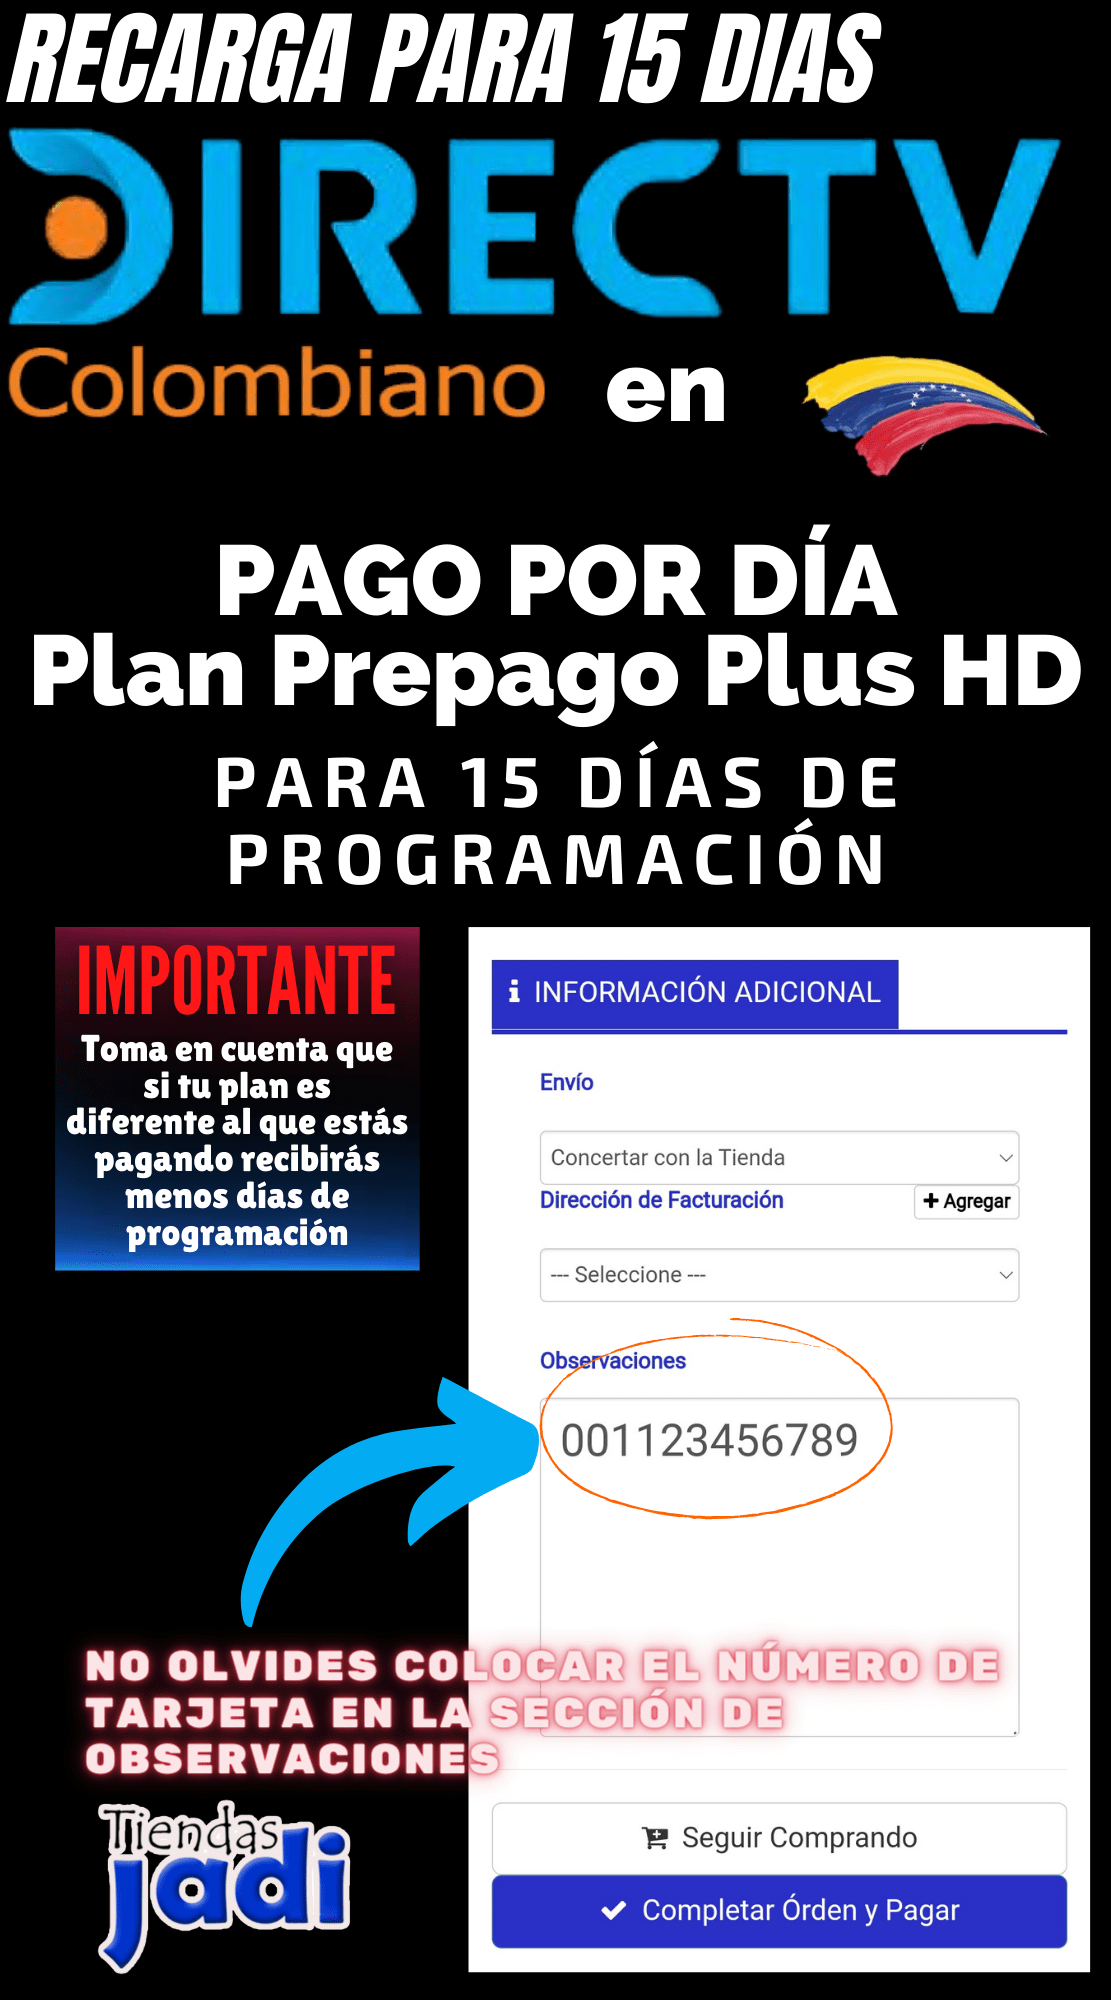 Recarga de Plan Basico Directv Colombiano 41.000 Pesos para 15 dias de programación